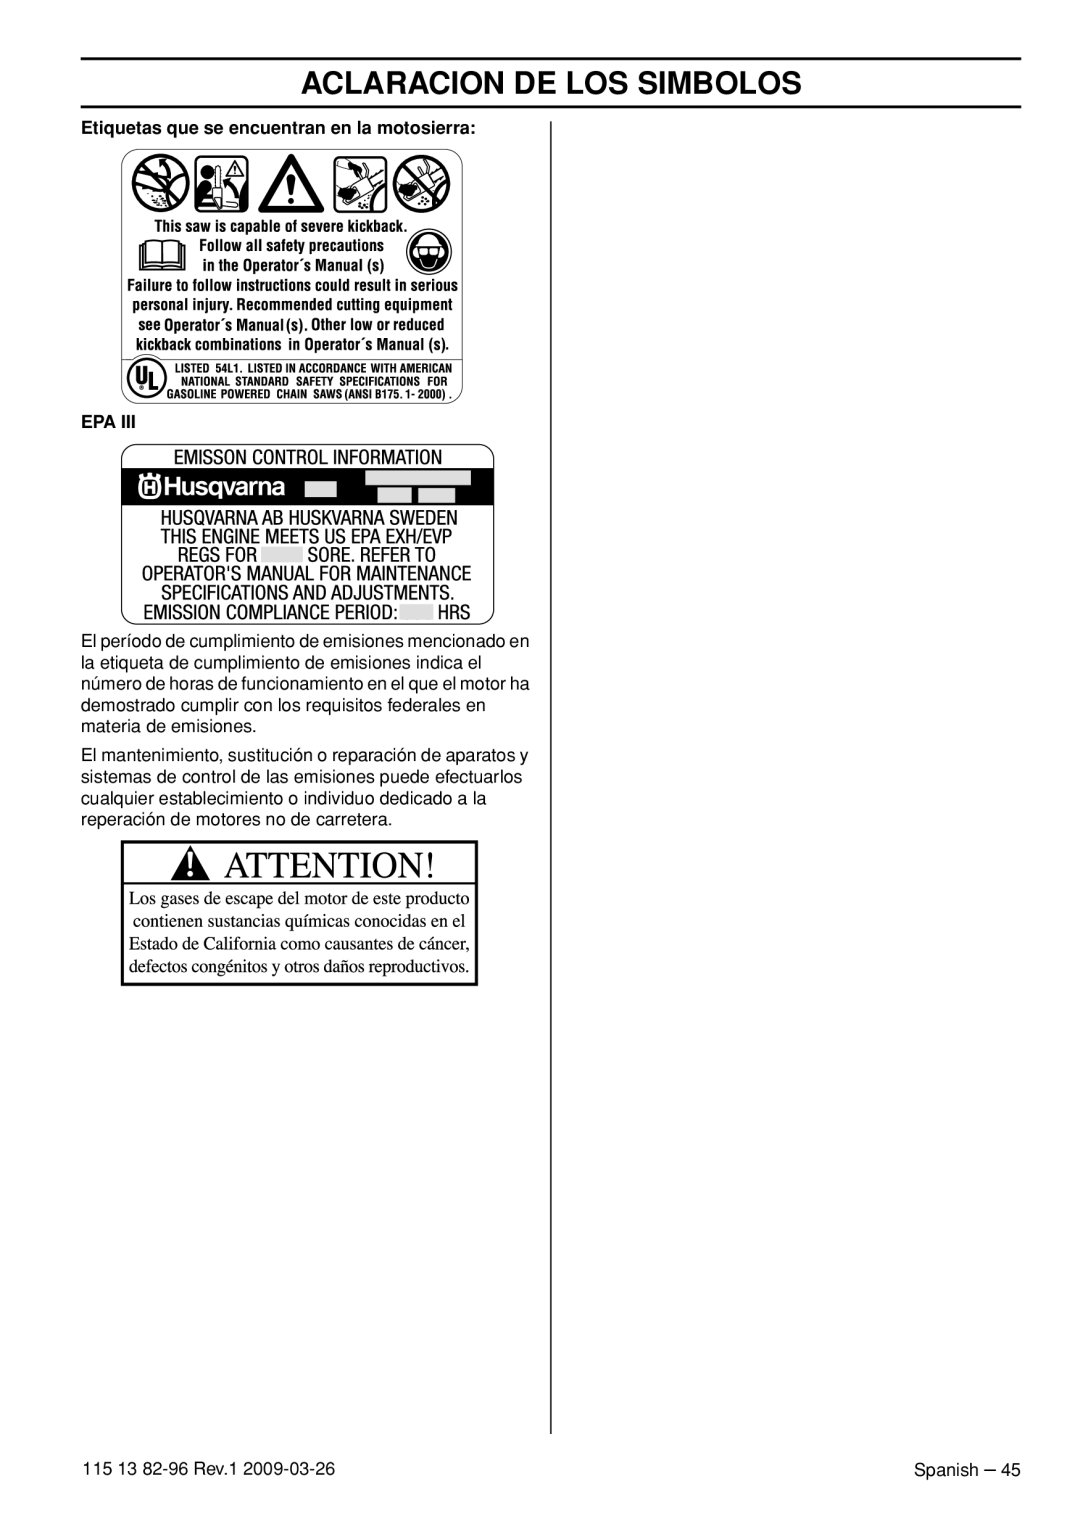 Husqvarna 115 13 82-96, 460 Rancher manual Etiquetas que se encuentran en la motosierra EPA, Aclaracion De Los Simbolos 